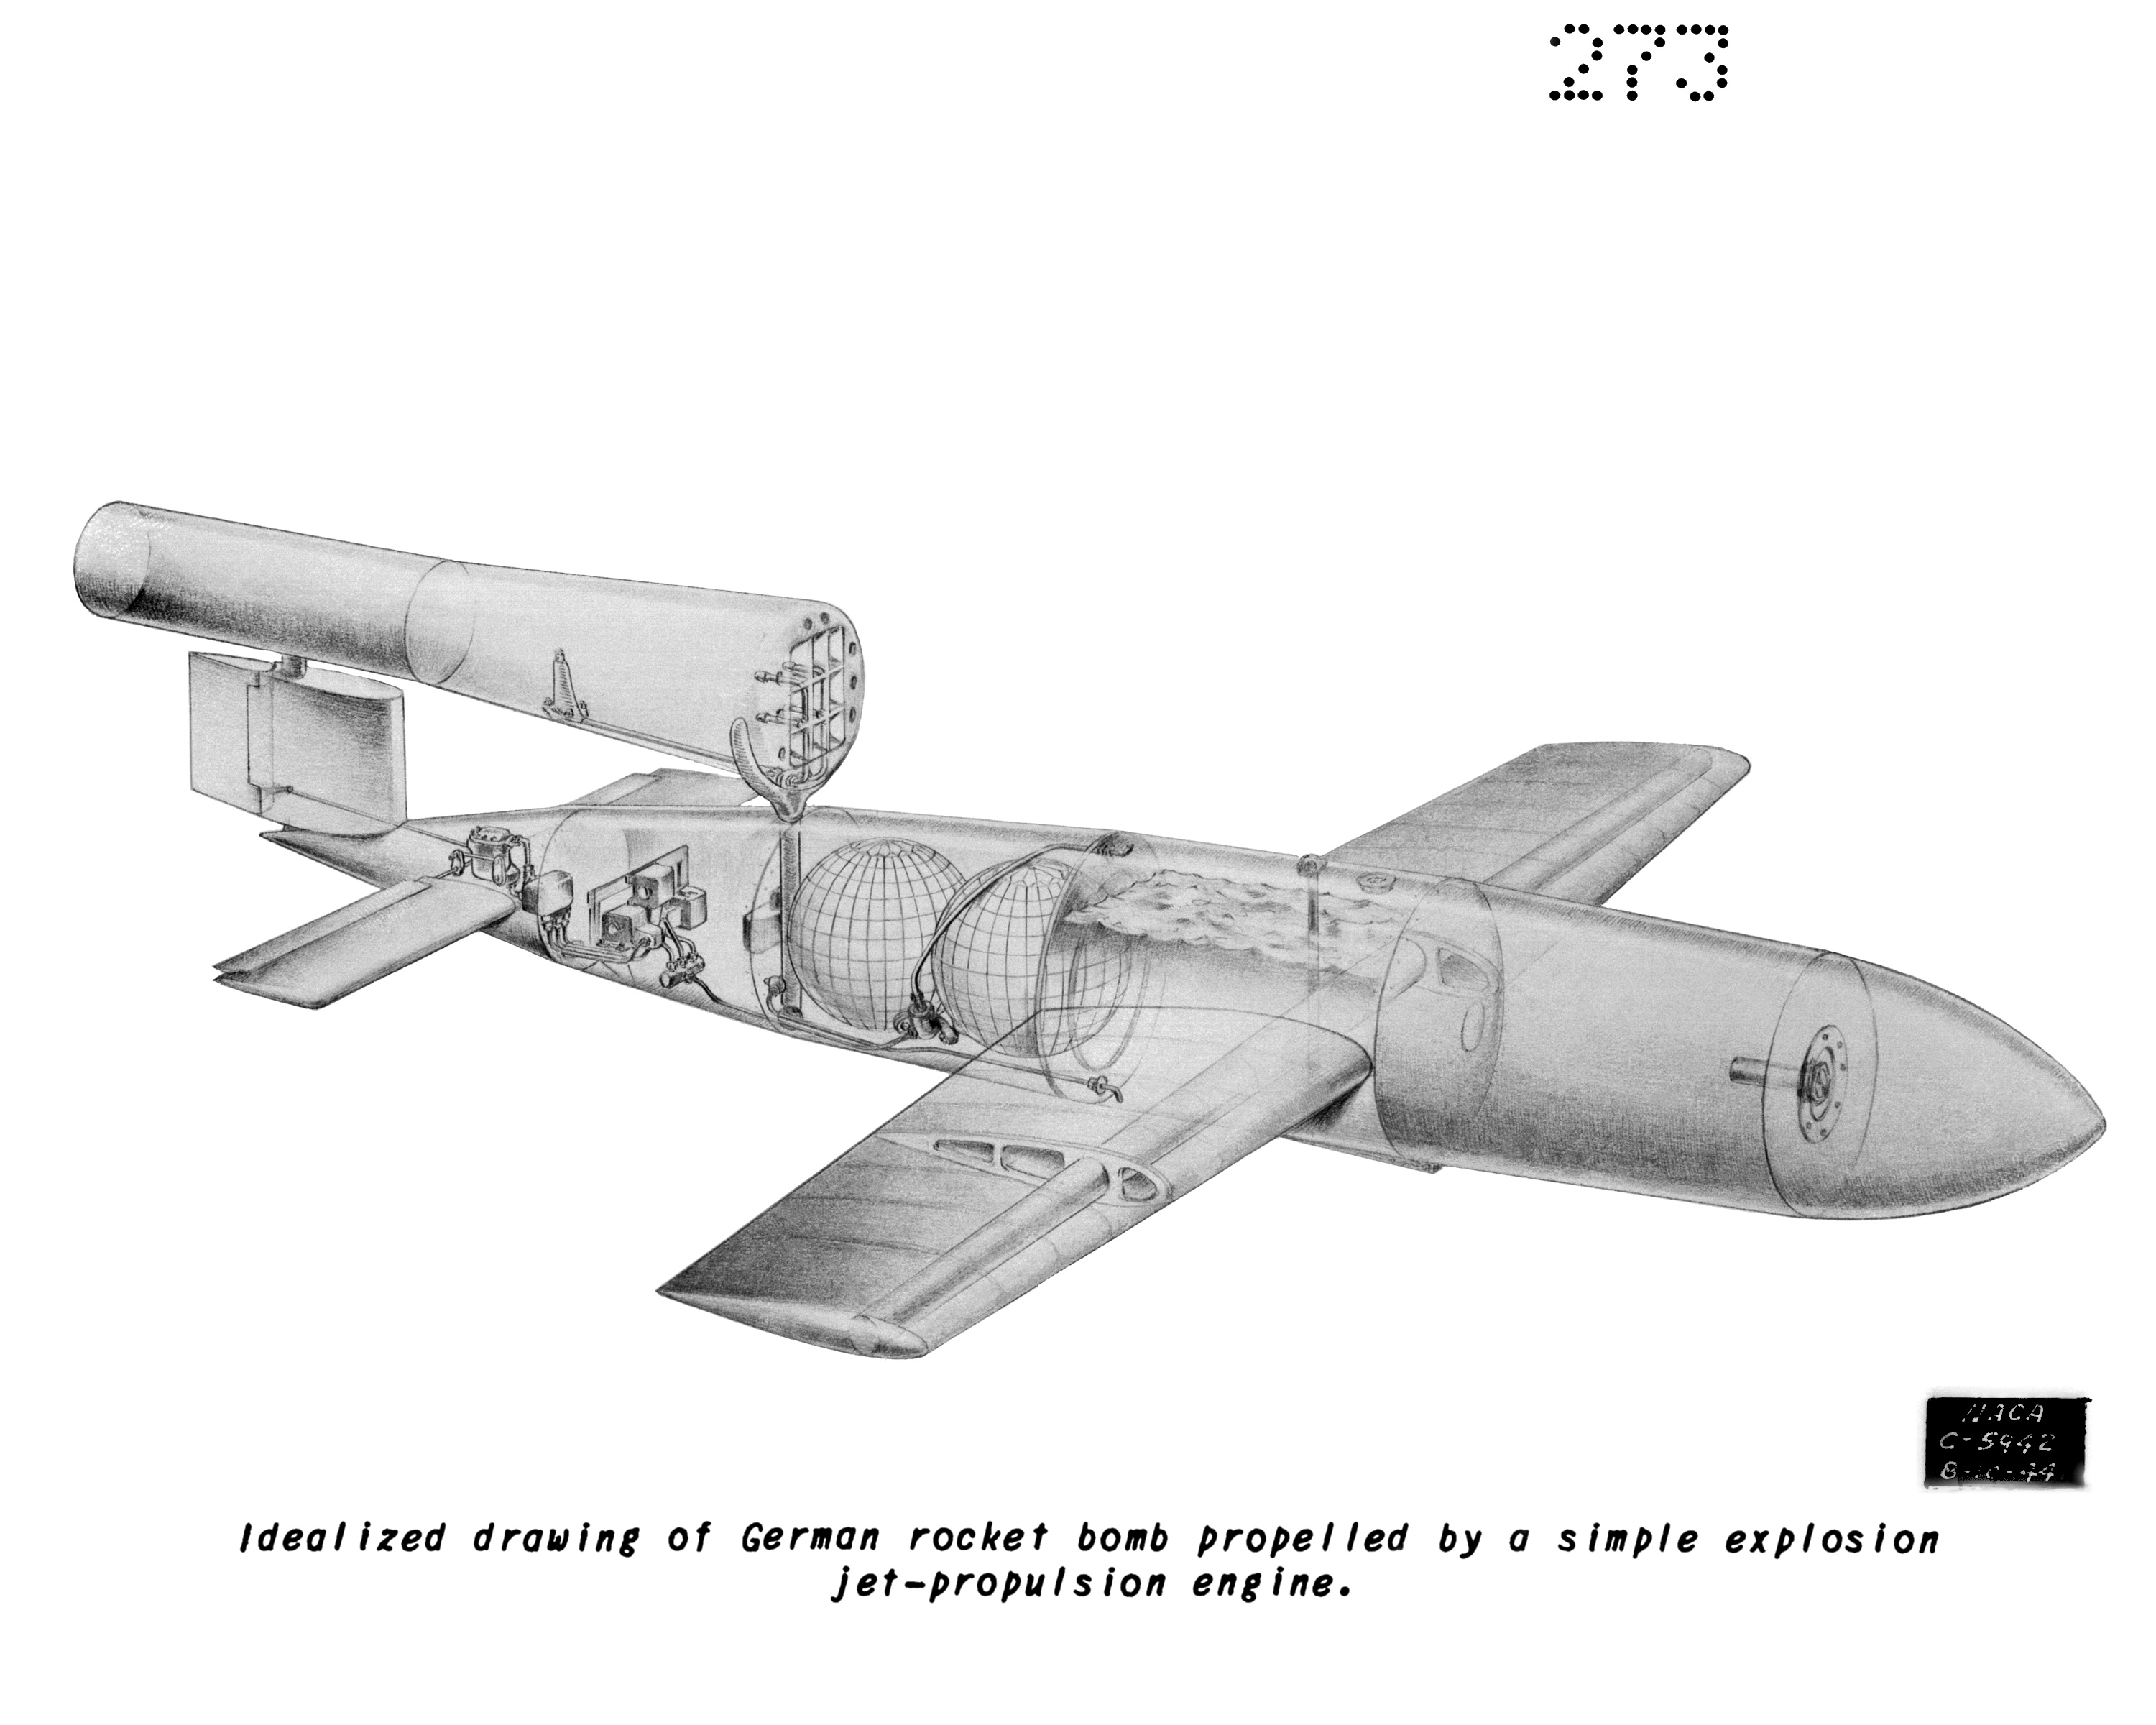 V-1 Buzz Bomb Cut-Aways